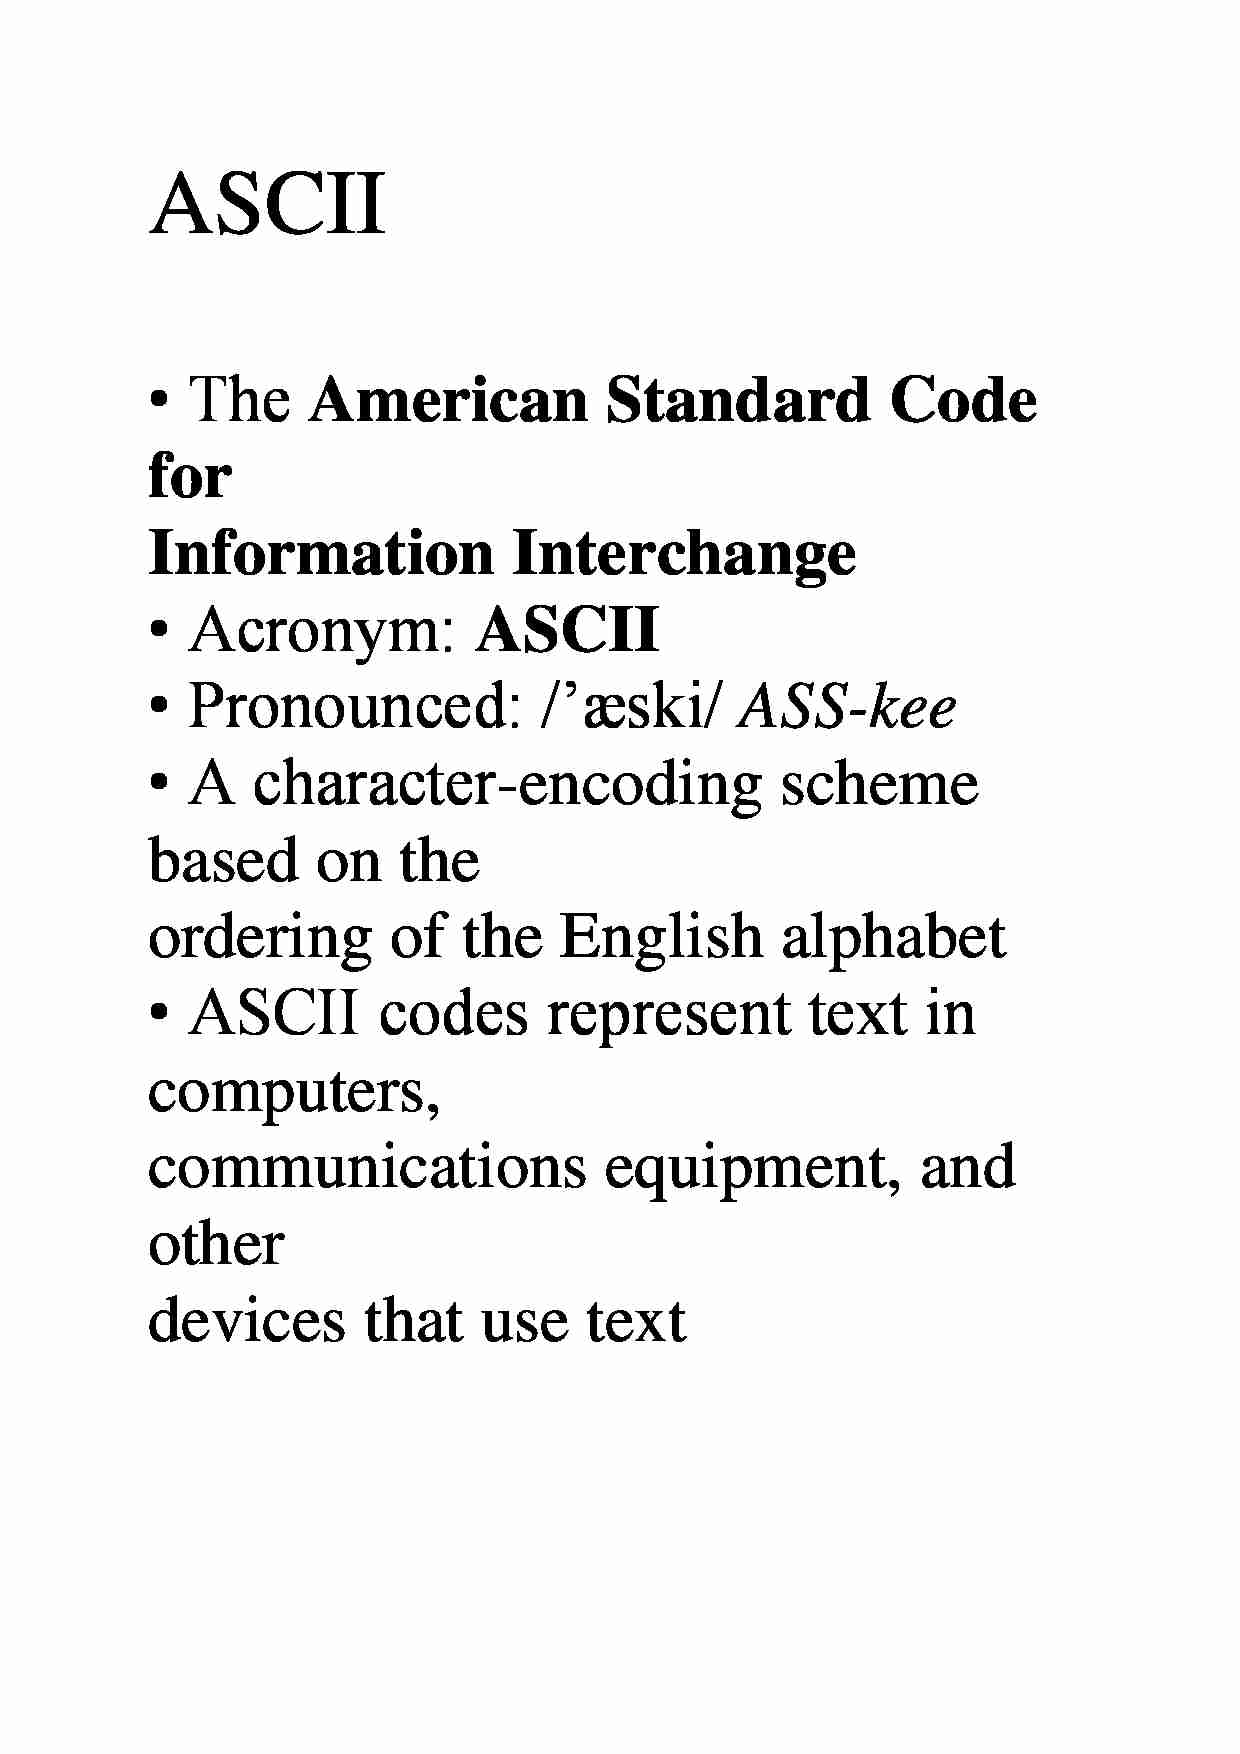 ASCII - omówienie zagadnienia  - strona 1